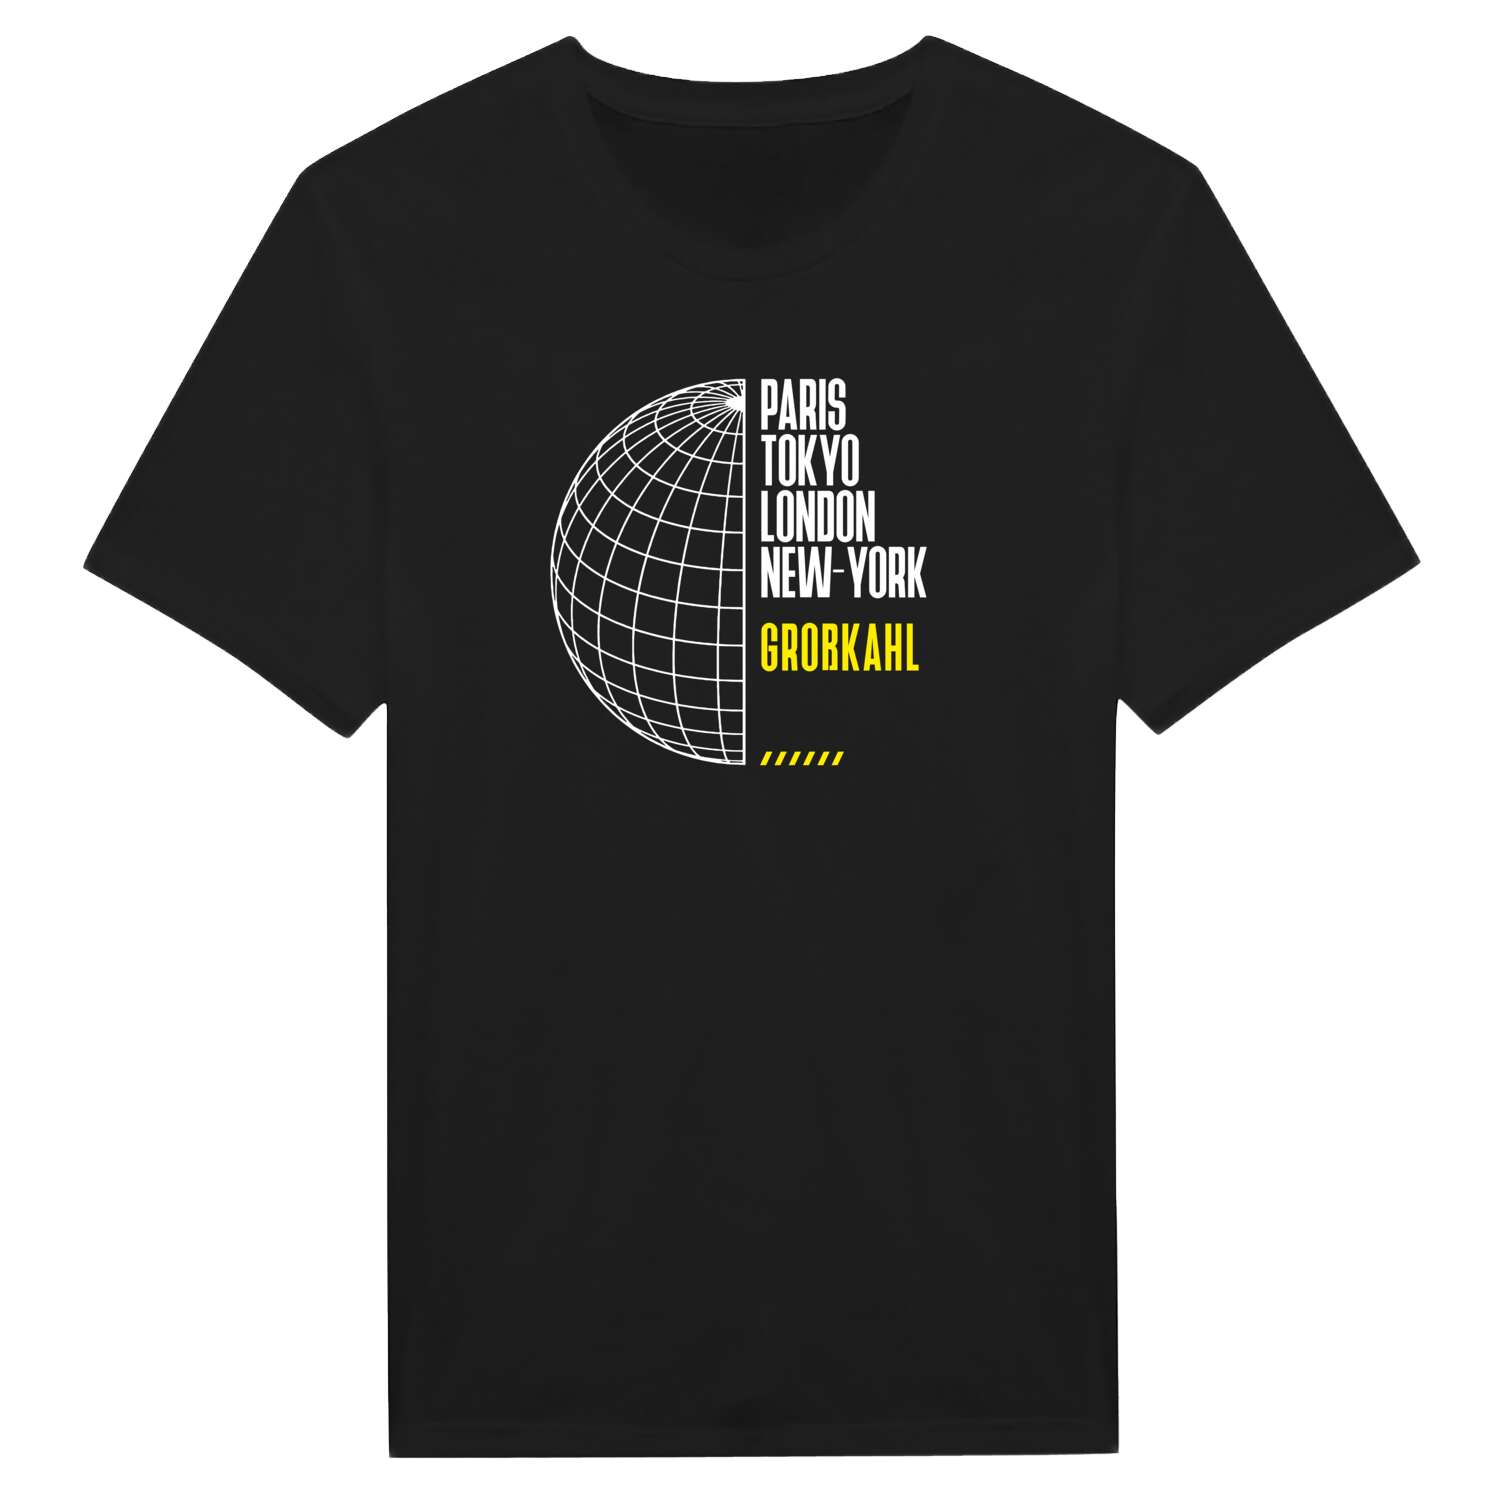 Großkahl T-Shirt »Paris Tokyo London«